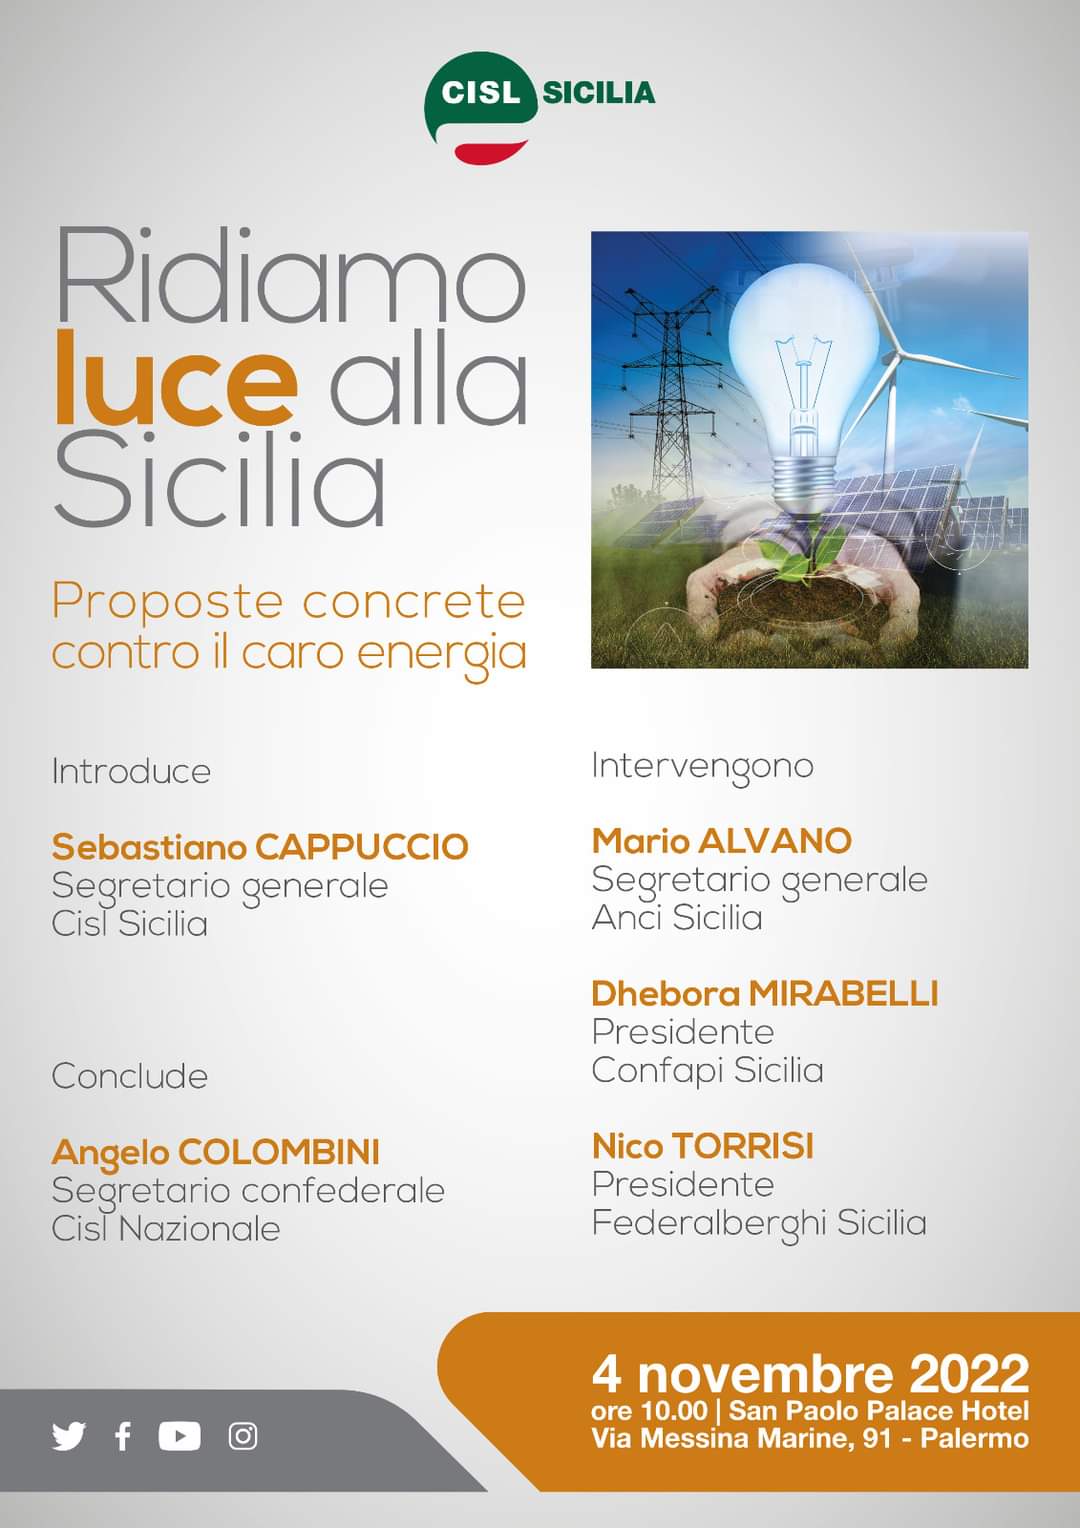 Al momento stai visualizzando “Ridiamo luce alla Sicilia”, piattaforma di proposte contro il caro bollette per famiglie e imprese